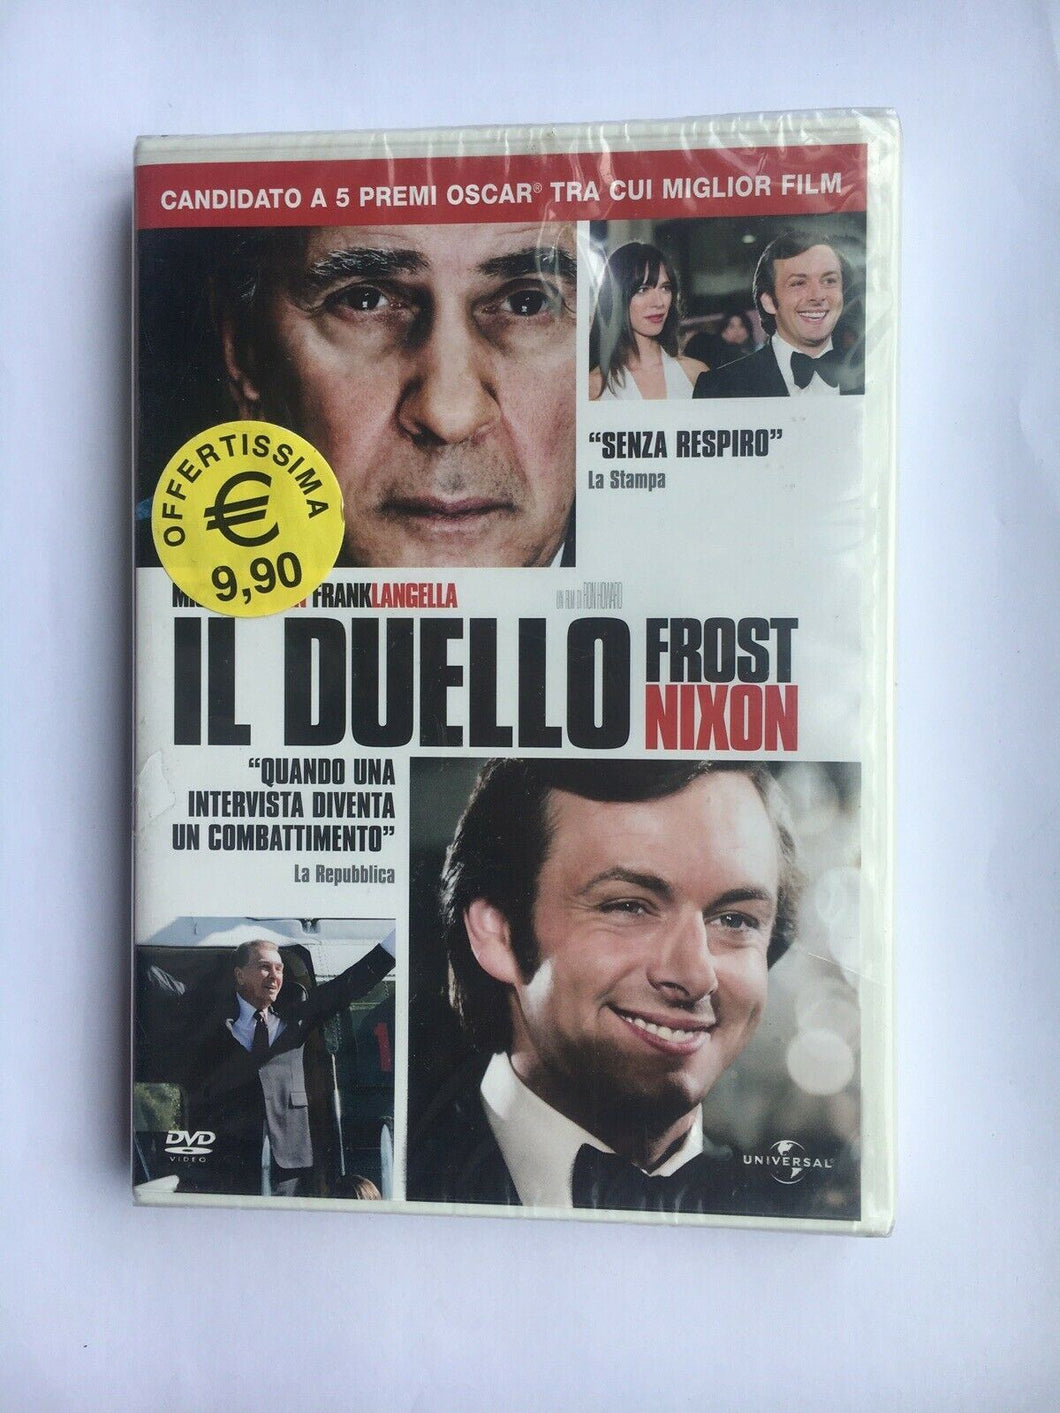 Frost/Nixon. Il duello (2008) DVD